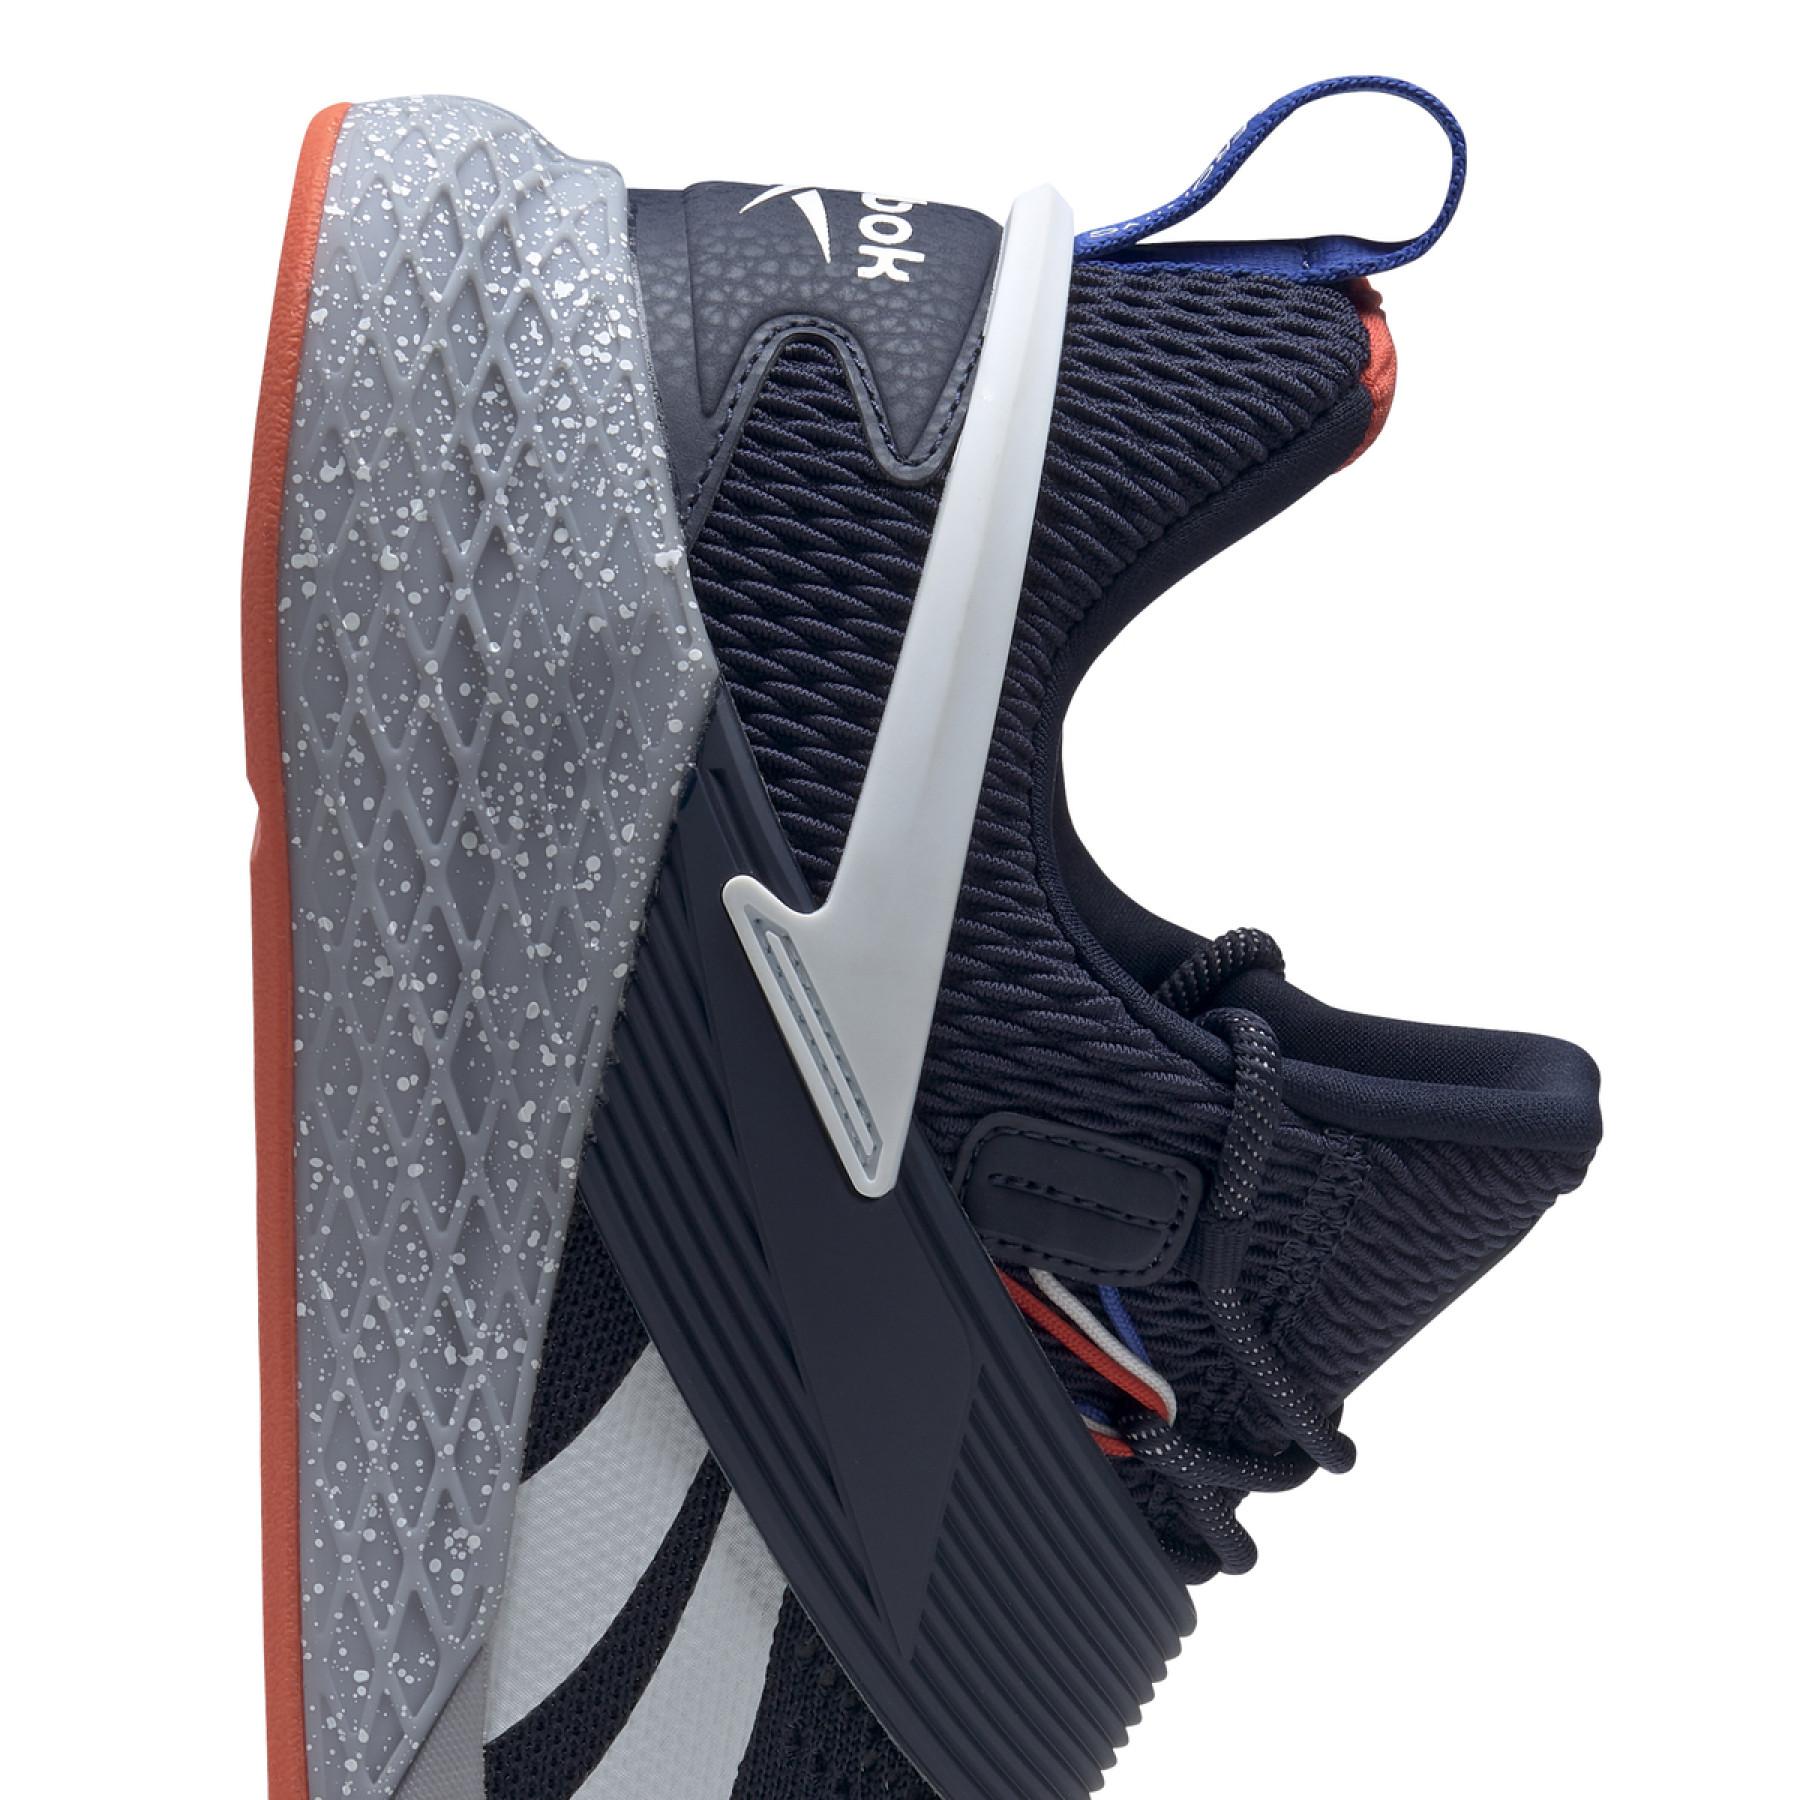 Schuhe Reebok Nano X Froning